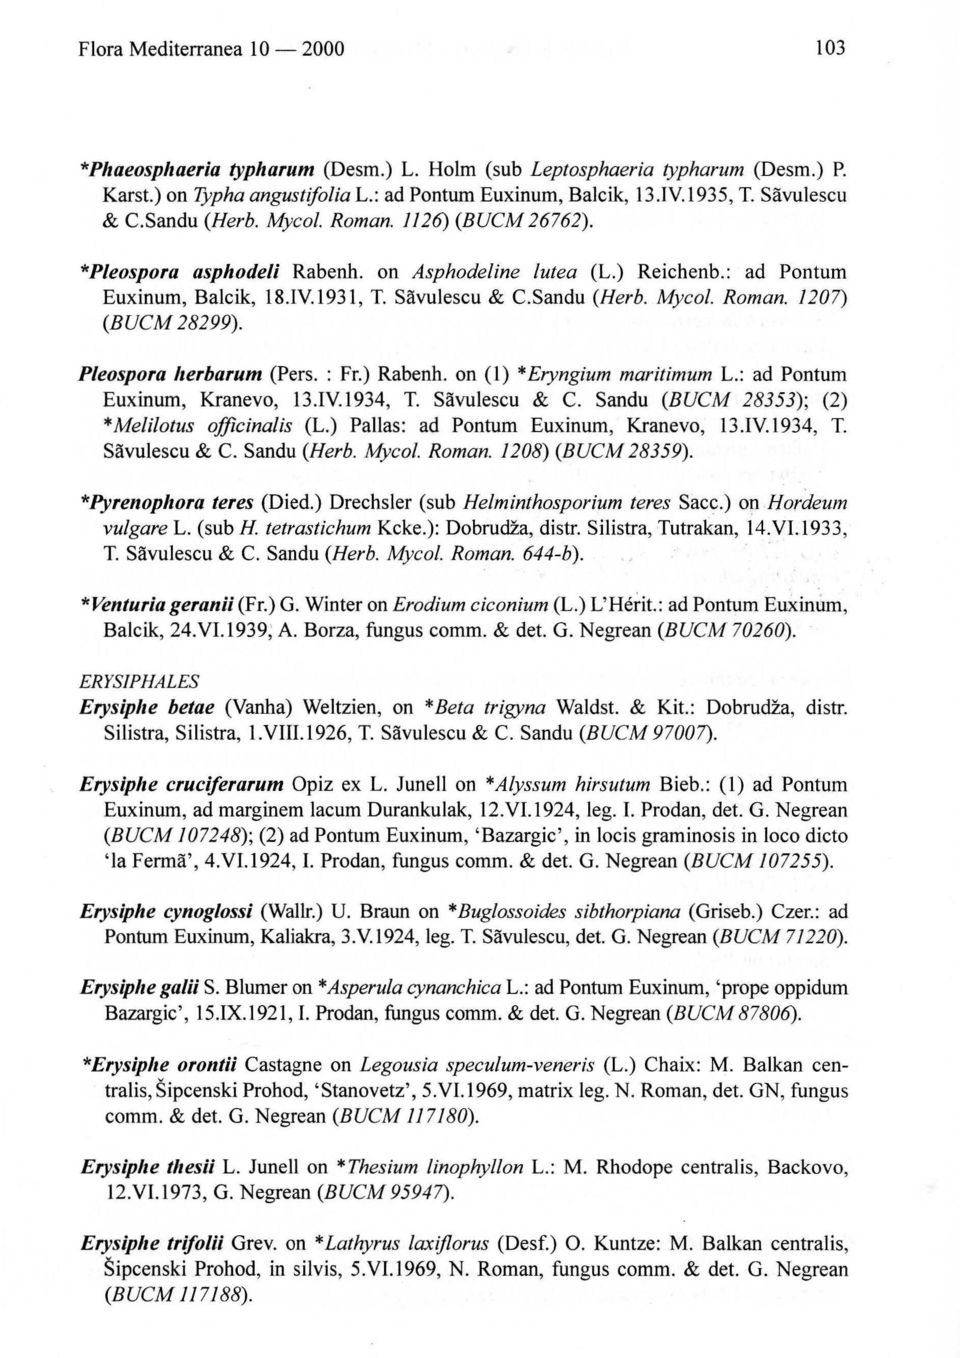 Pleospora herbarum (Pers. : Fr.) Rabenh. on (l) * Eryngium maritimum L.: ad Pontum Euxinum, Kranevo, 13.1Y.1934, T. Sàvulescu & C. Sandu (BUCM 28353); (2) * Melilotus officinalis (L.